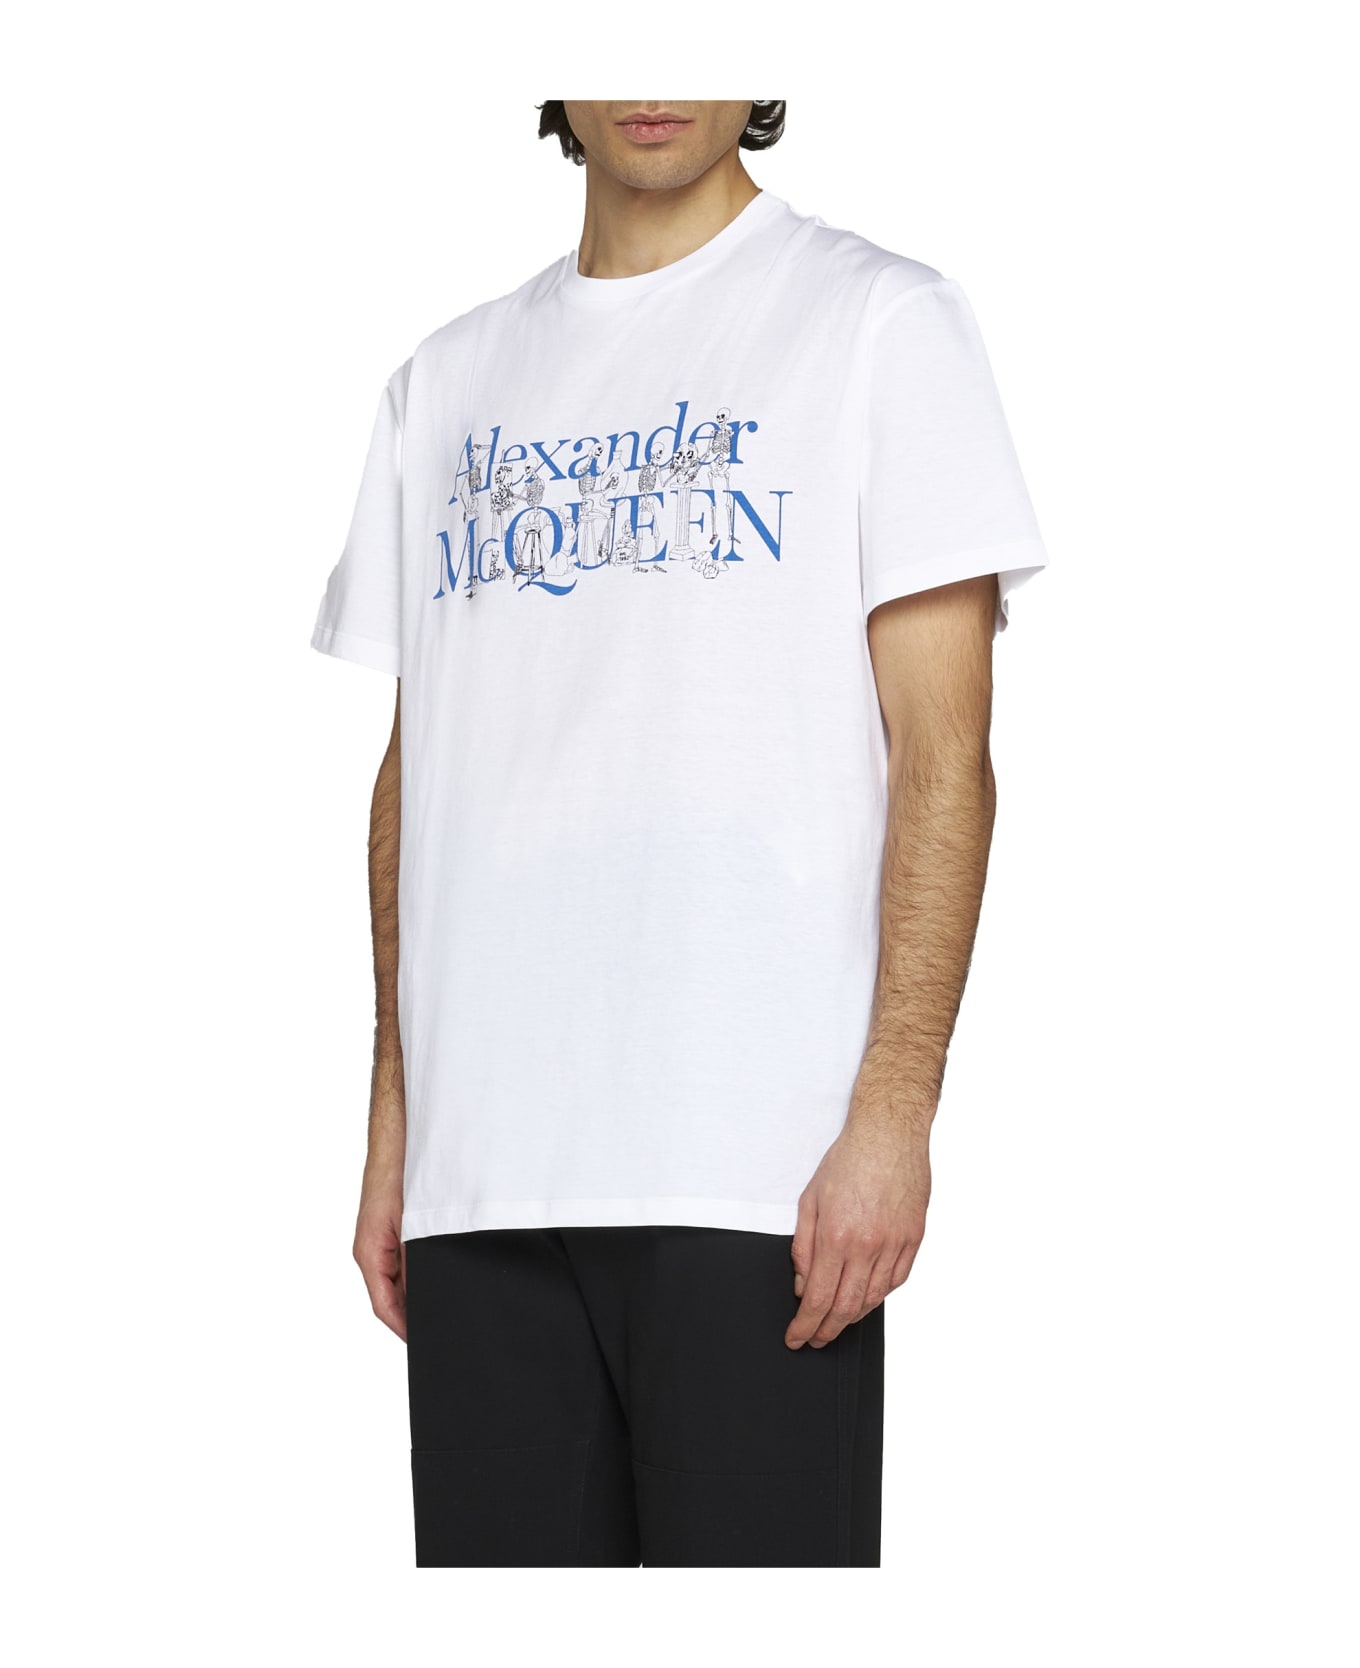 Alexander McQueen T-Shirt - White mix